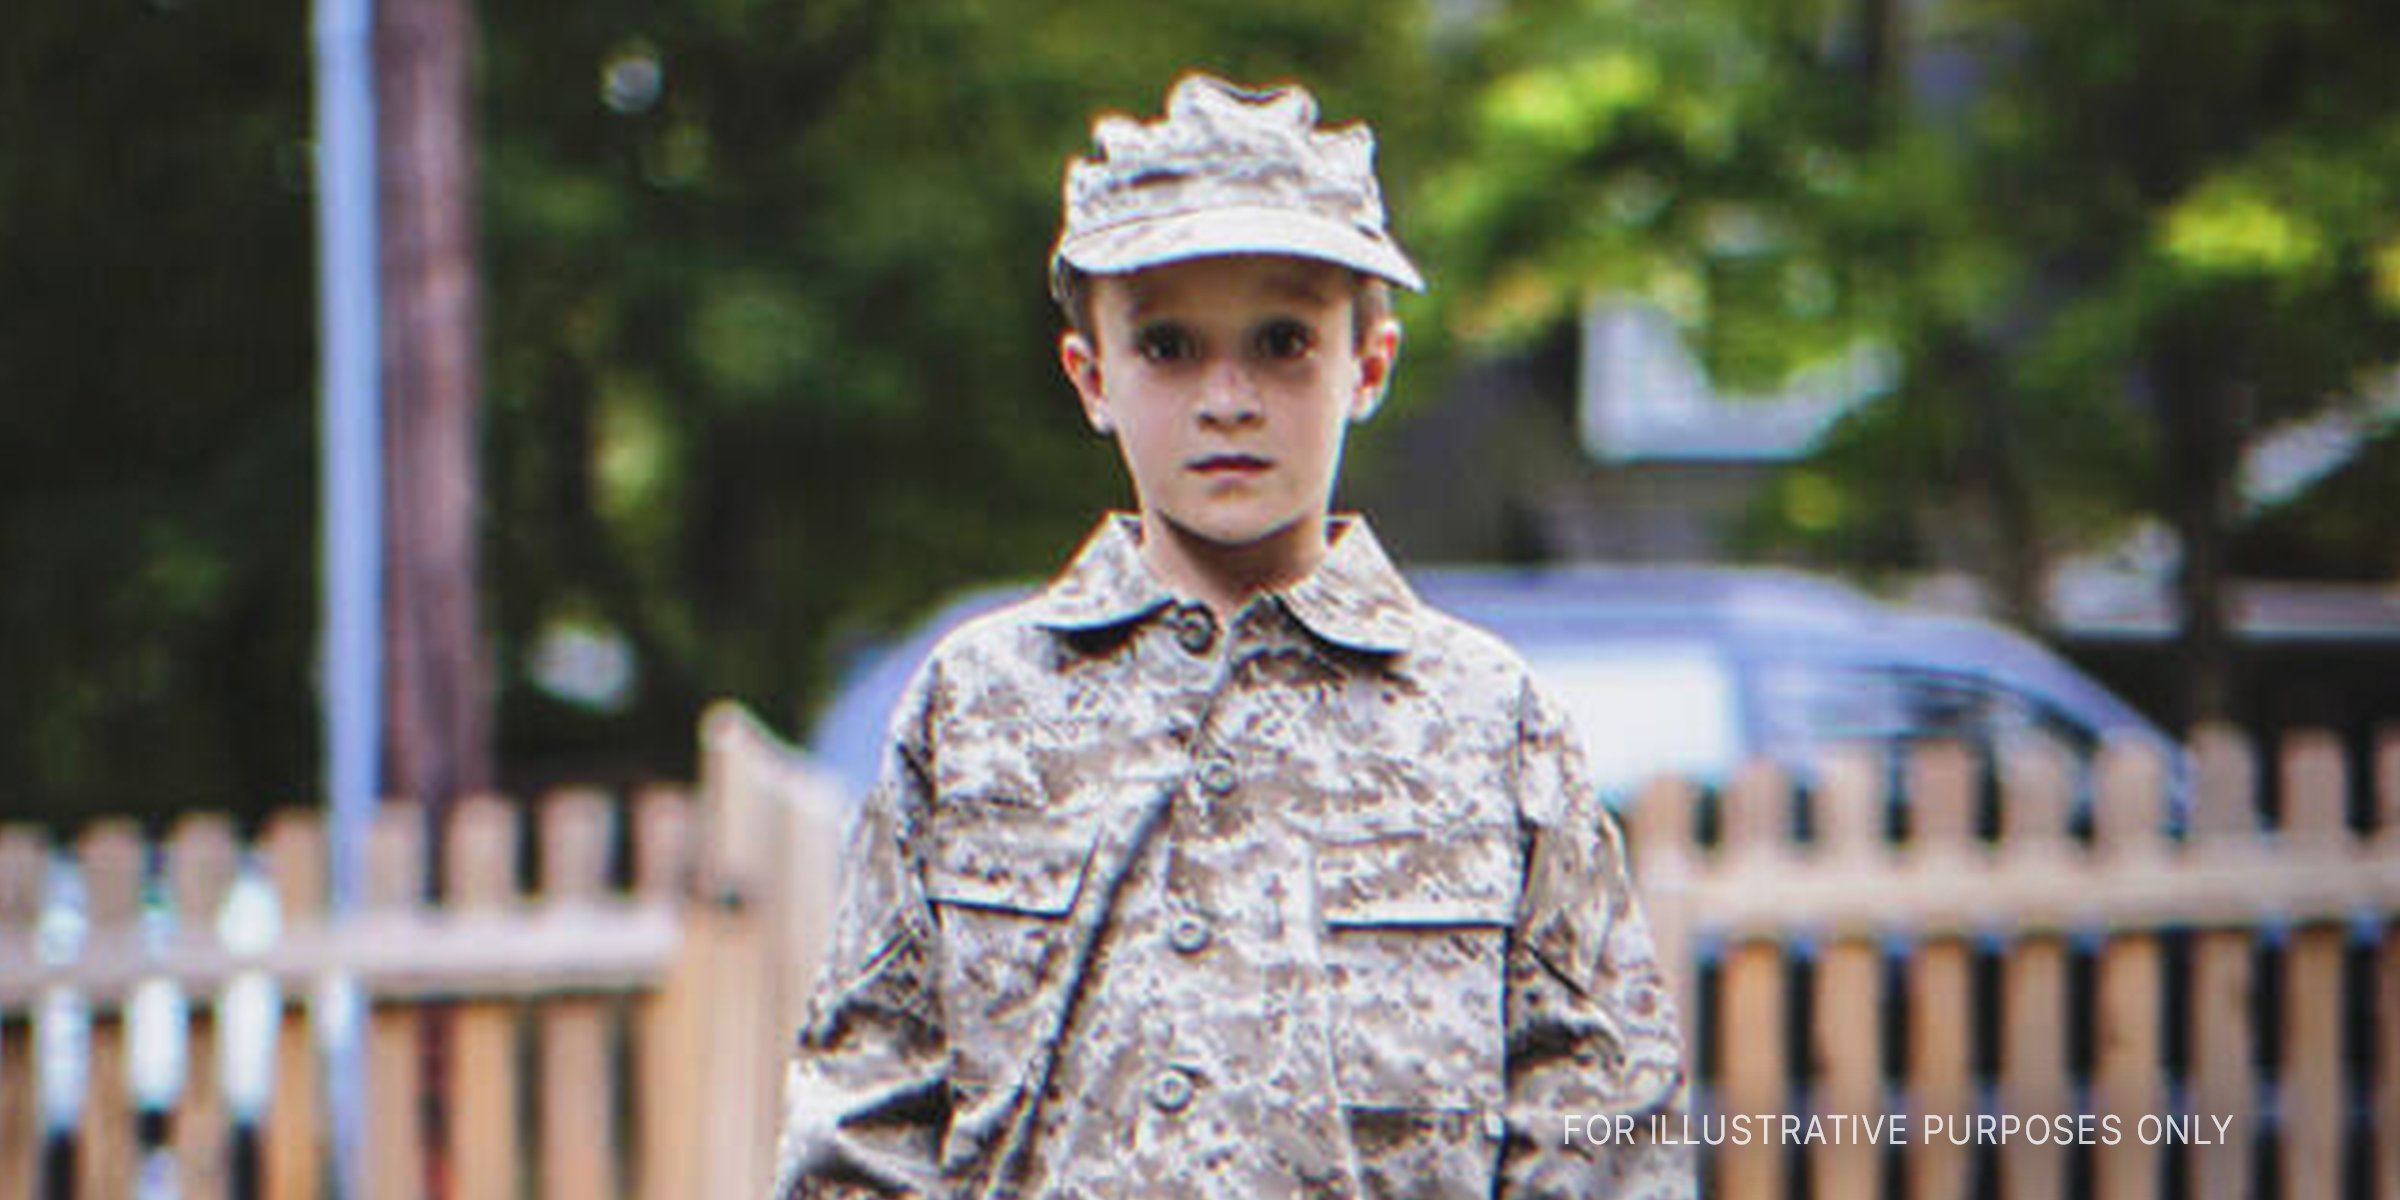 Junge in Militäruniform. | Quelle: Getty Images